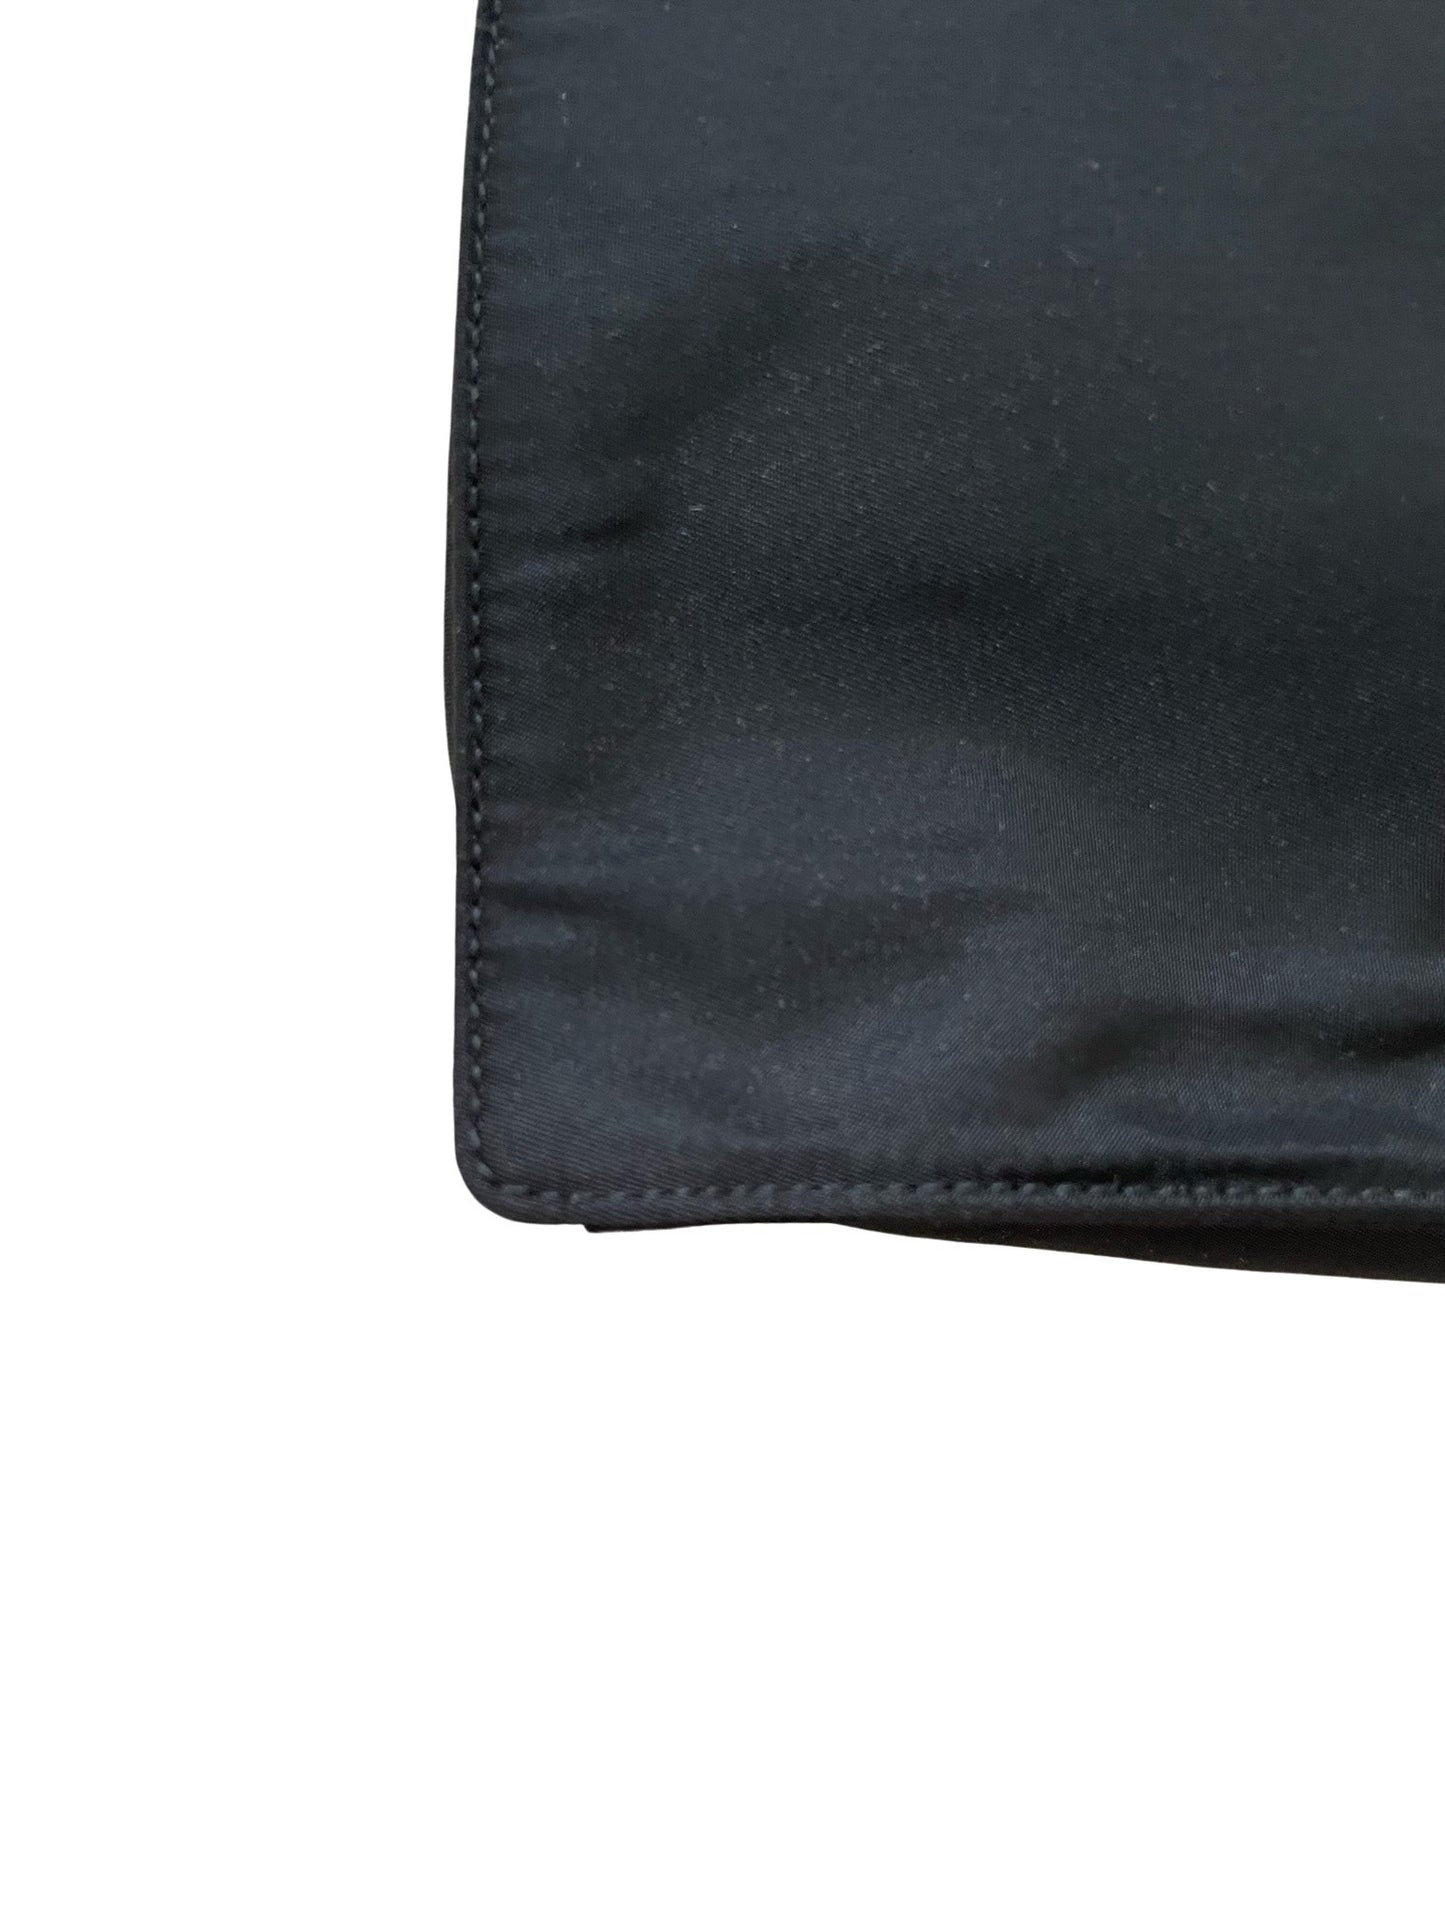 Prada Black Nylon Tote Bag